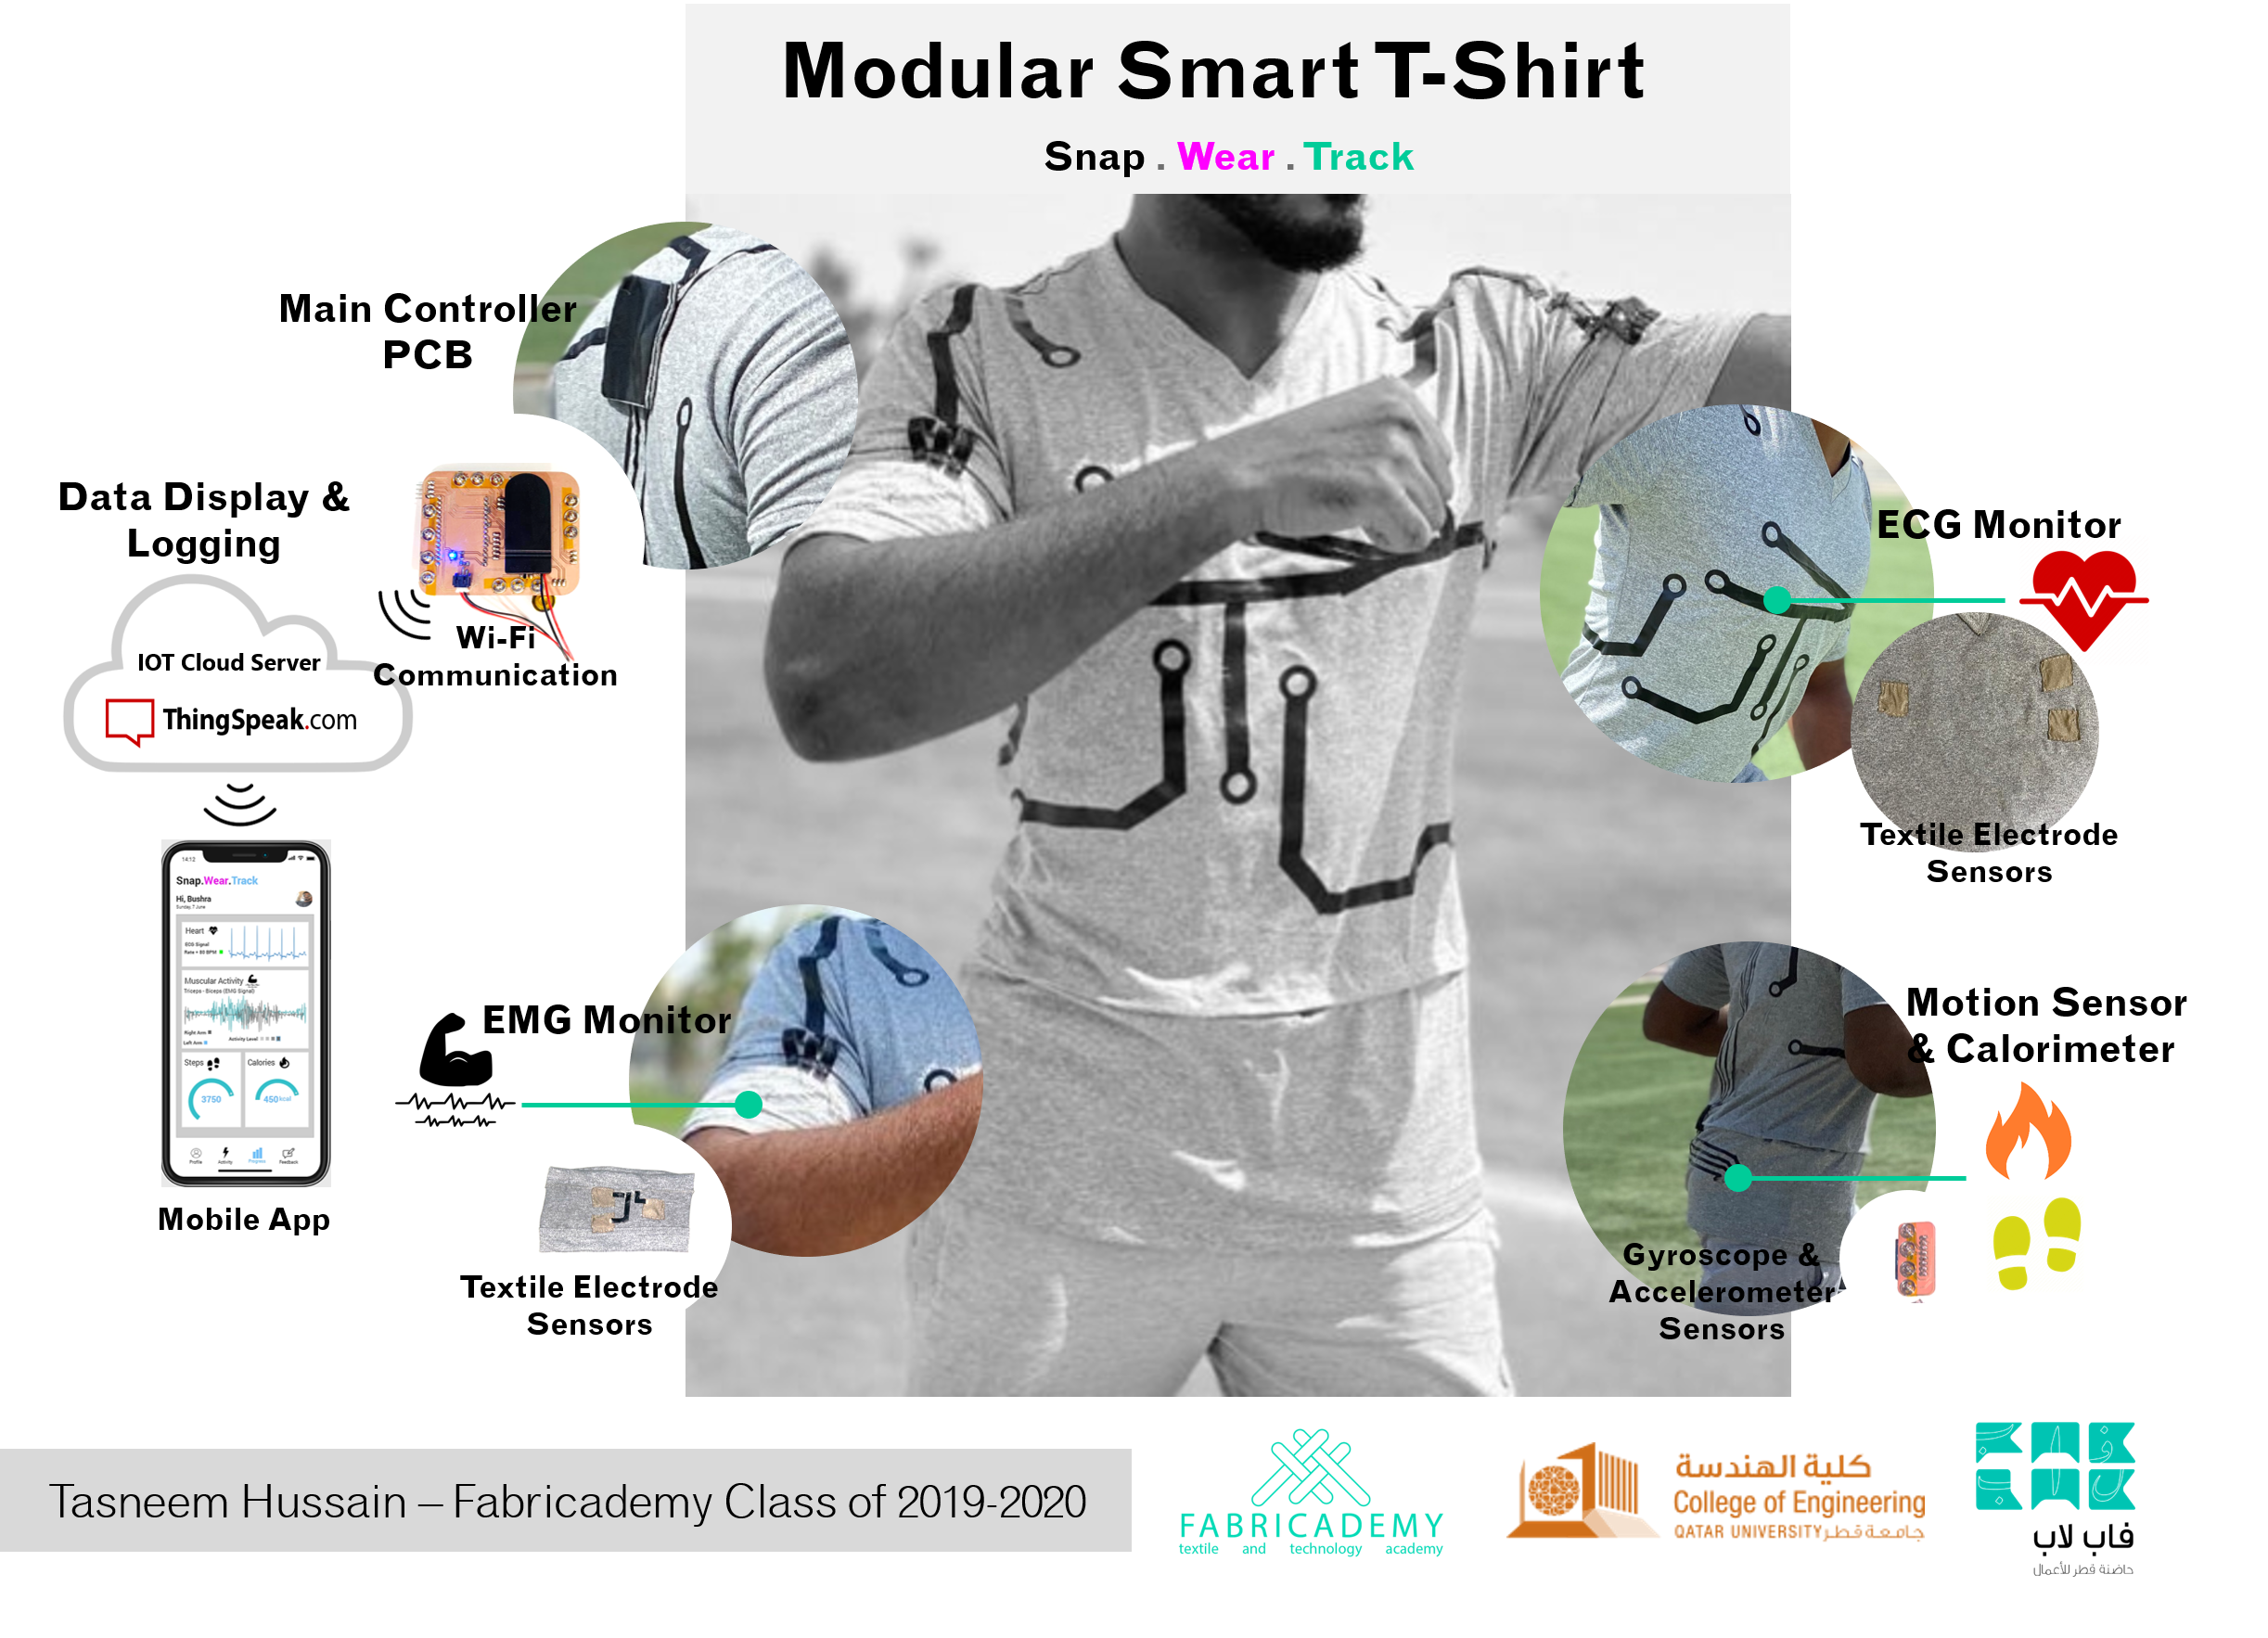 Modular Smart T-Shirt, by Tasneem Hussain